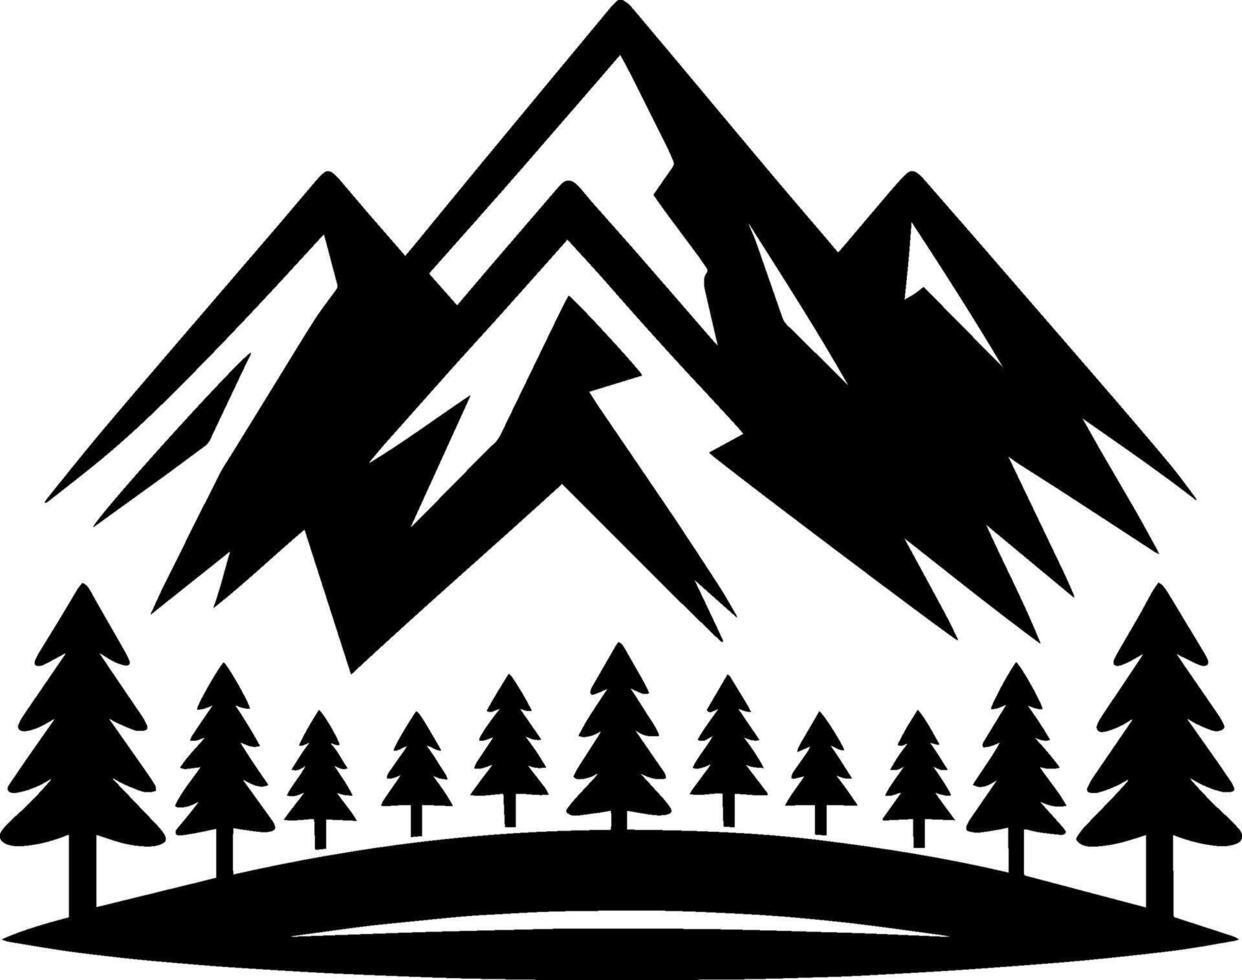 montaña silueta minimalista icono logo en plano negro y blanco diseño vector